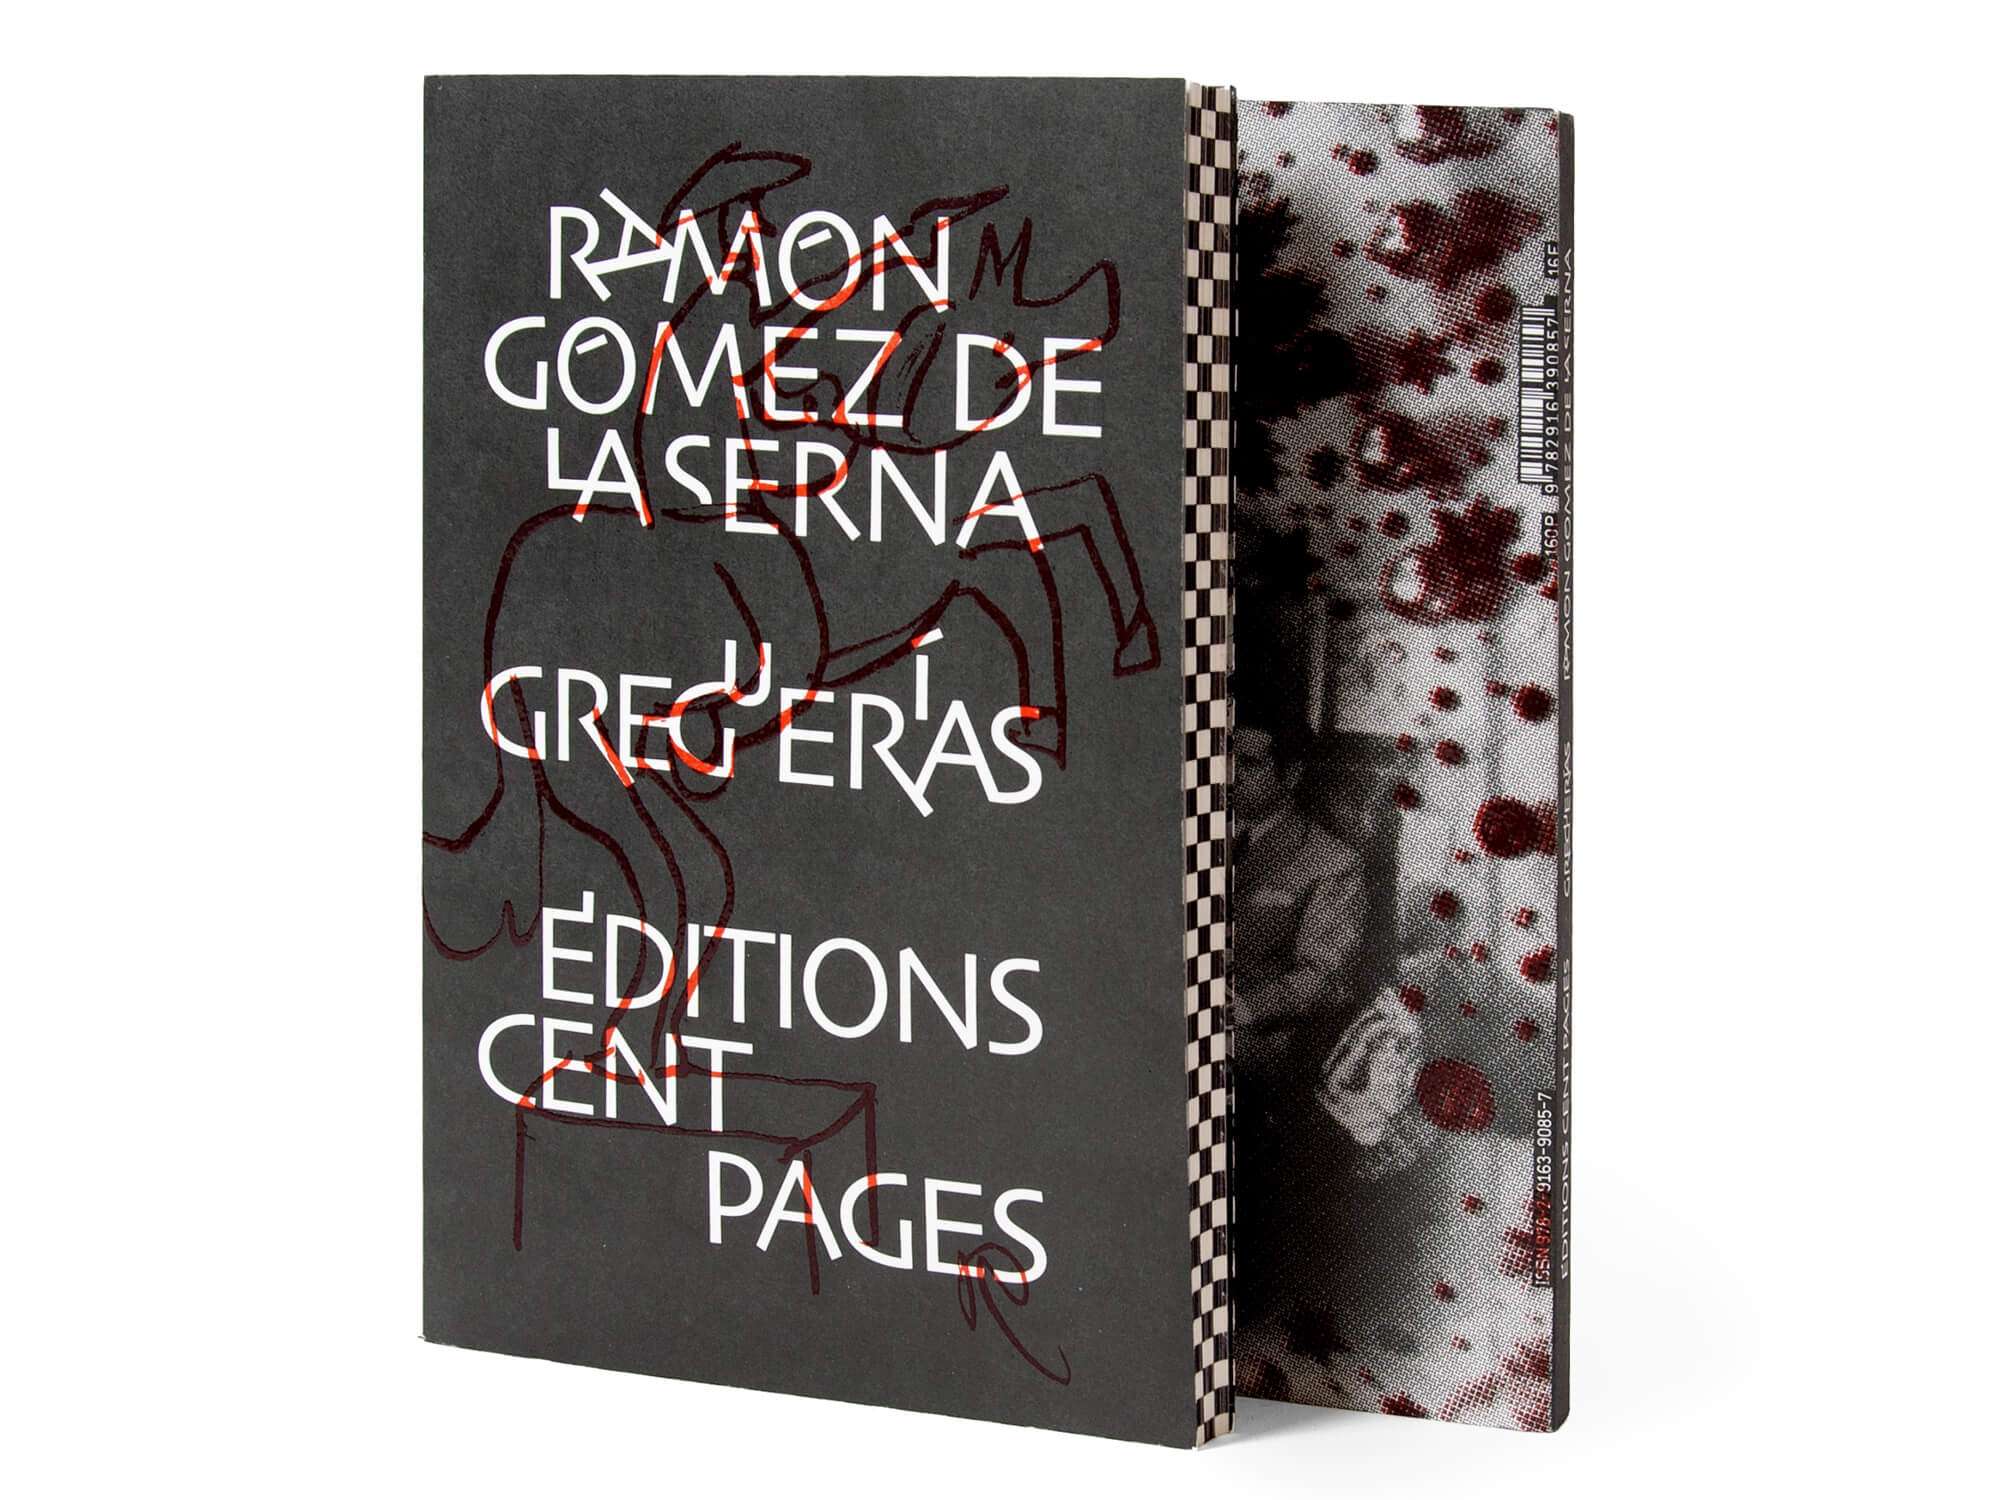 Couverture du livre Greguerias de Ramon Gomez de la Serna aux éditions cent pages